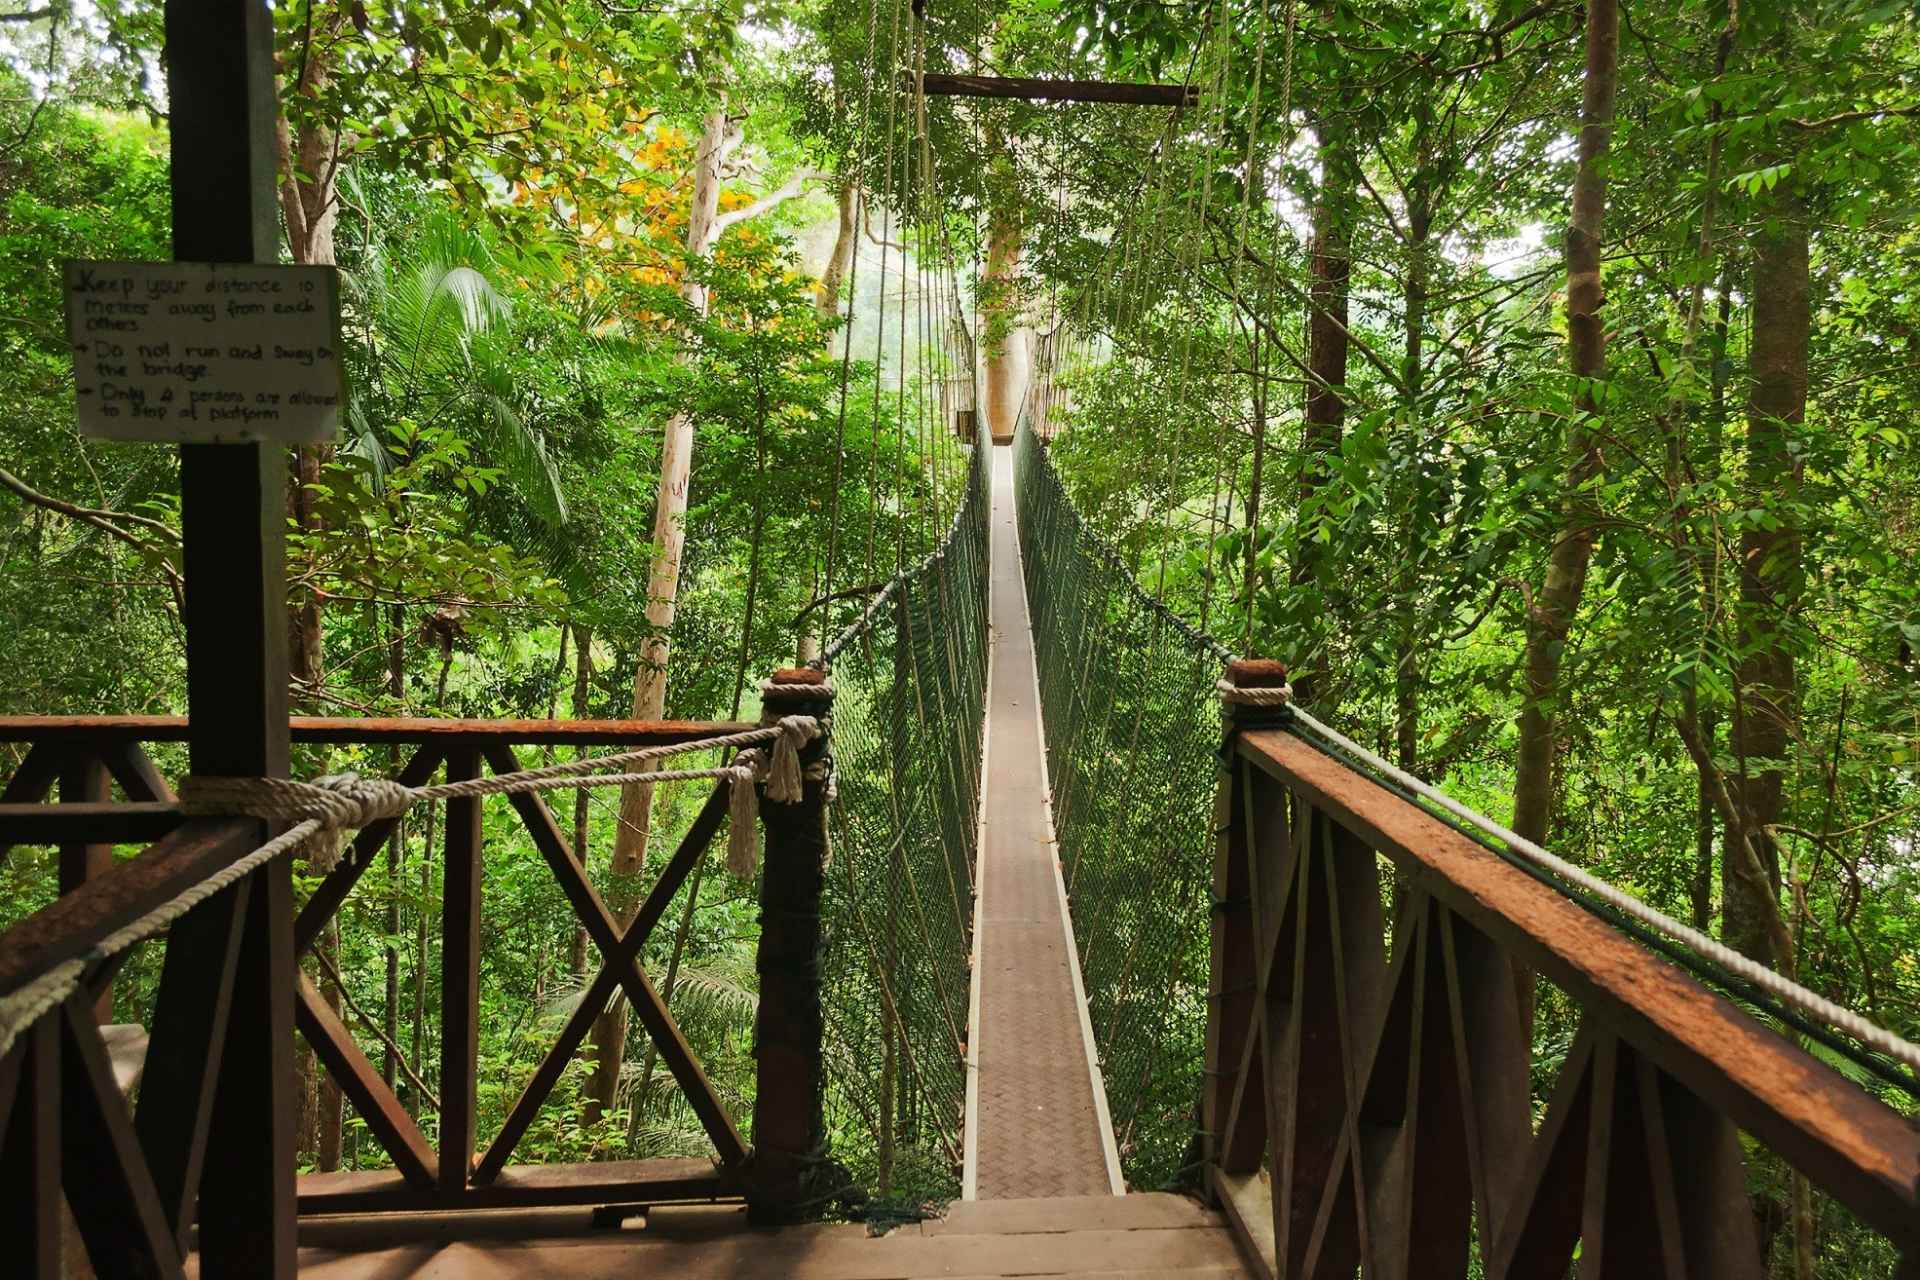 Taman Negara: Discovering Malaysia's Ancient Rainforest